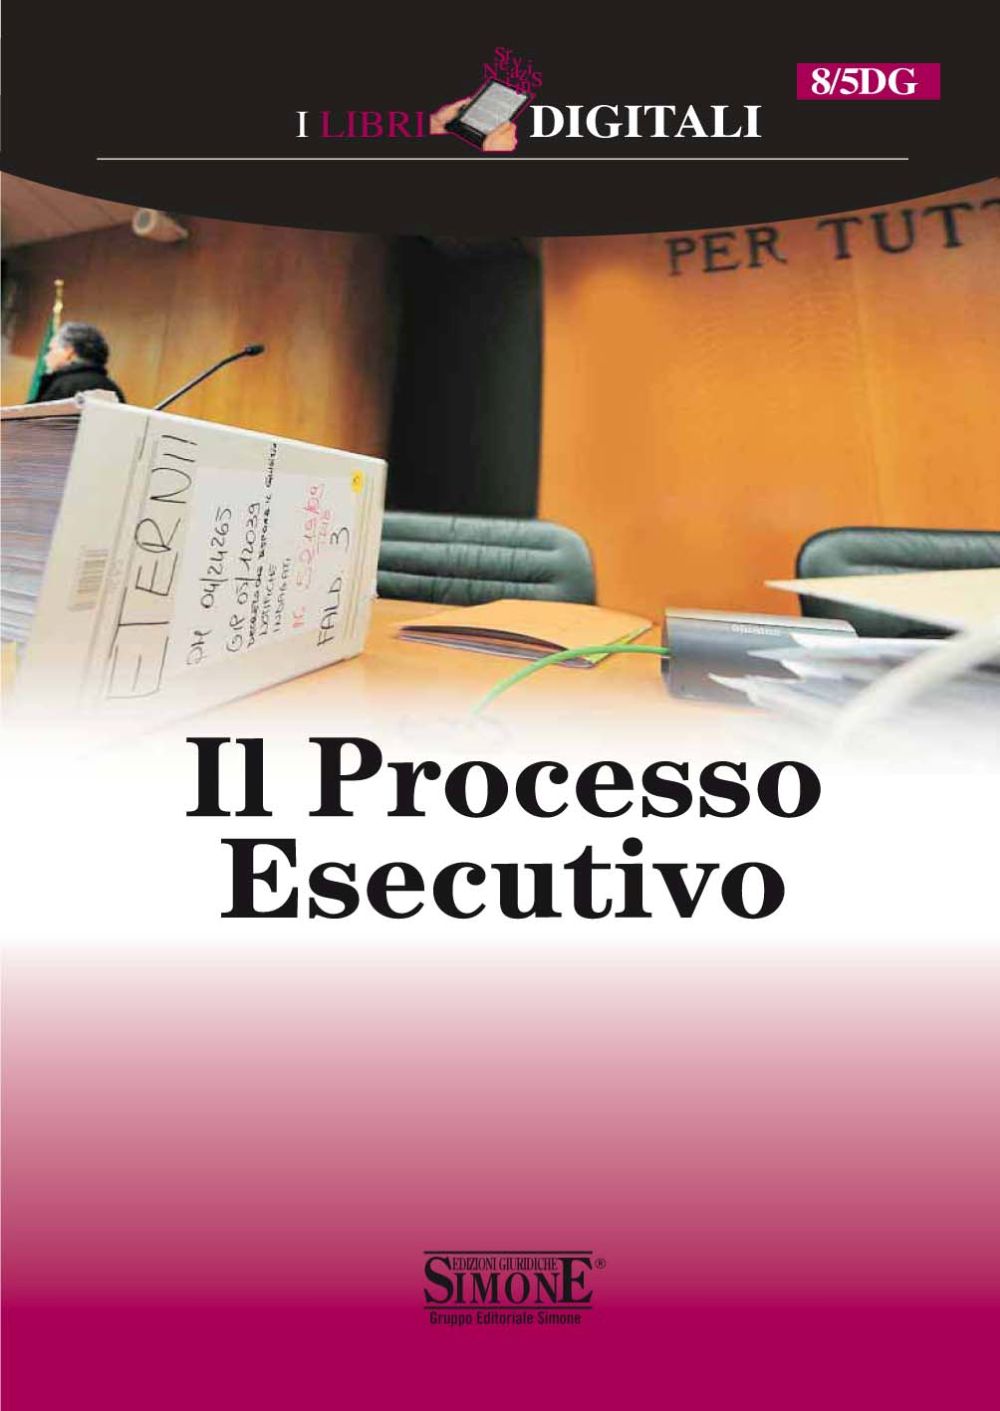 [Ebook] Il Processo esecutivo